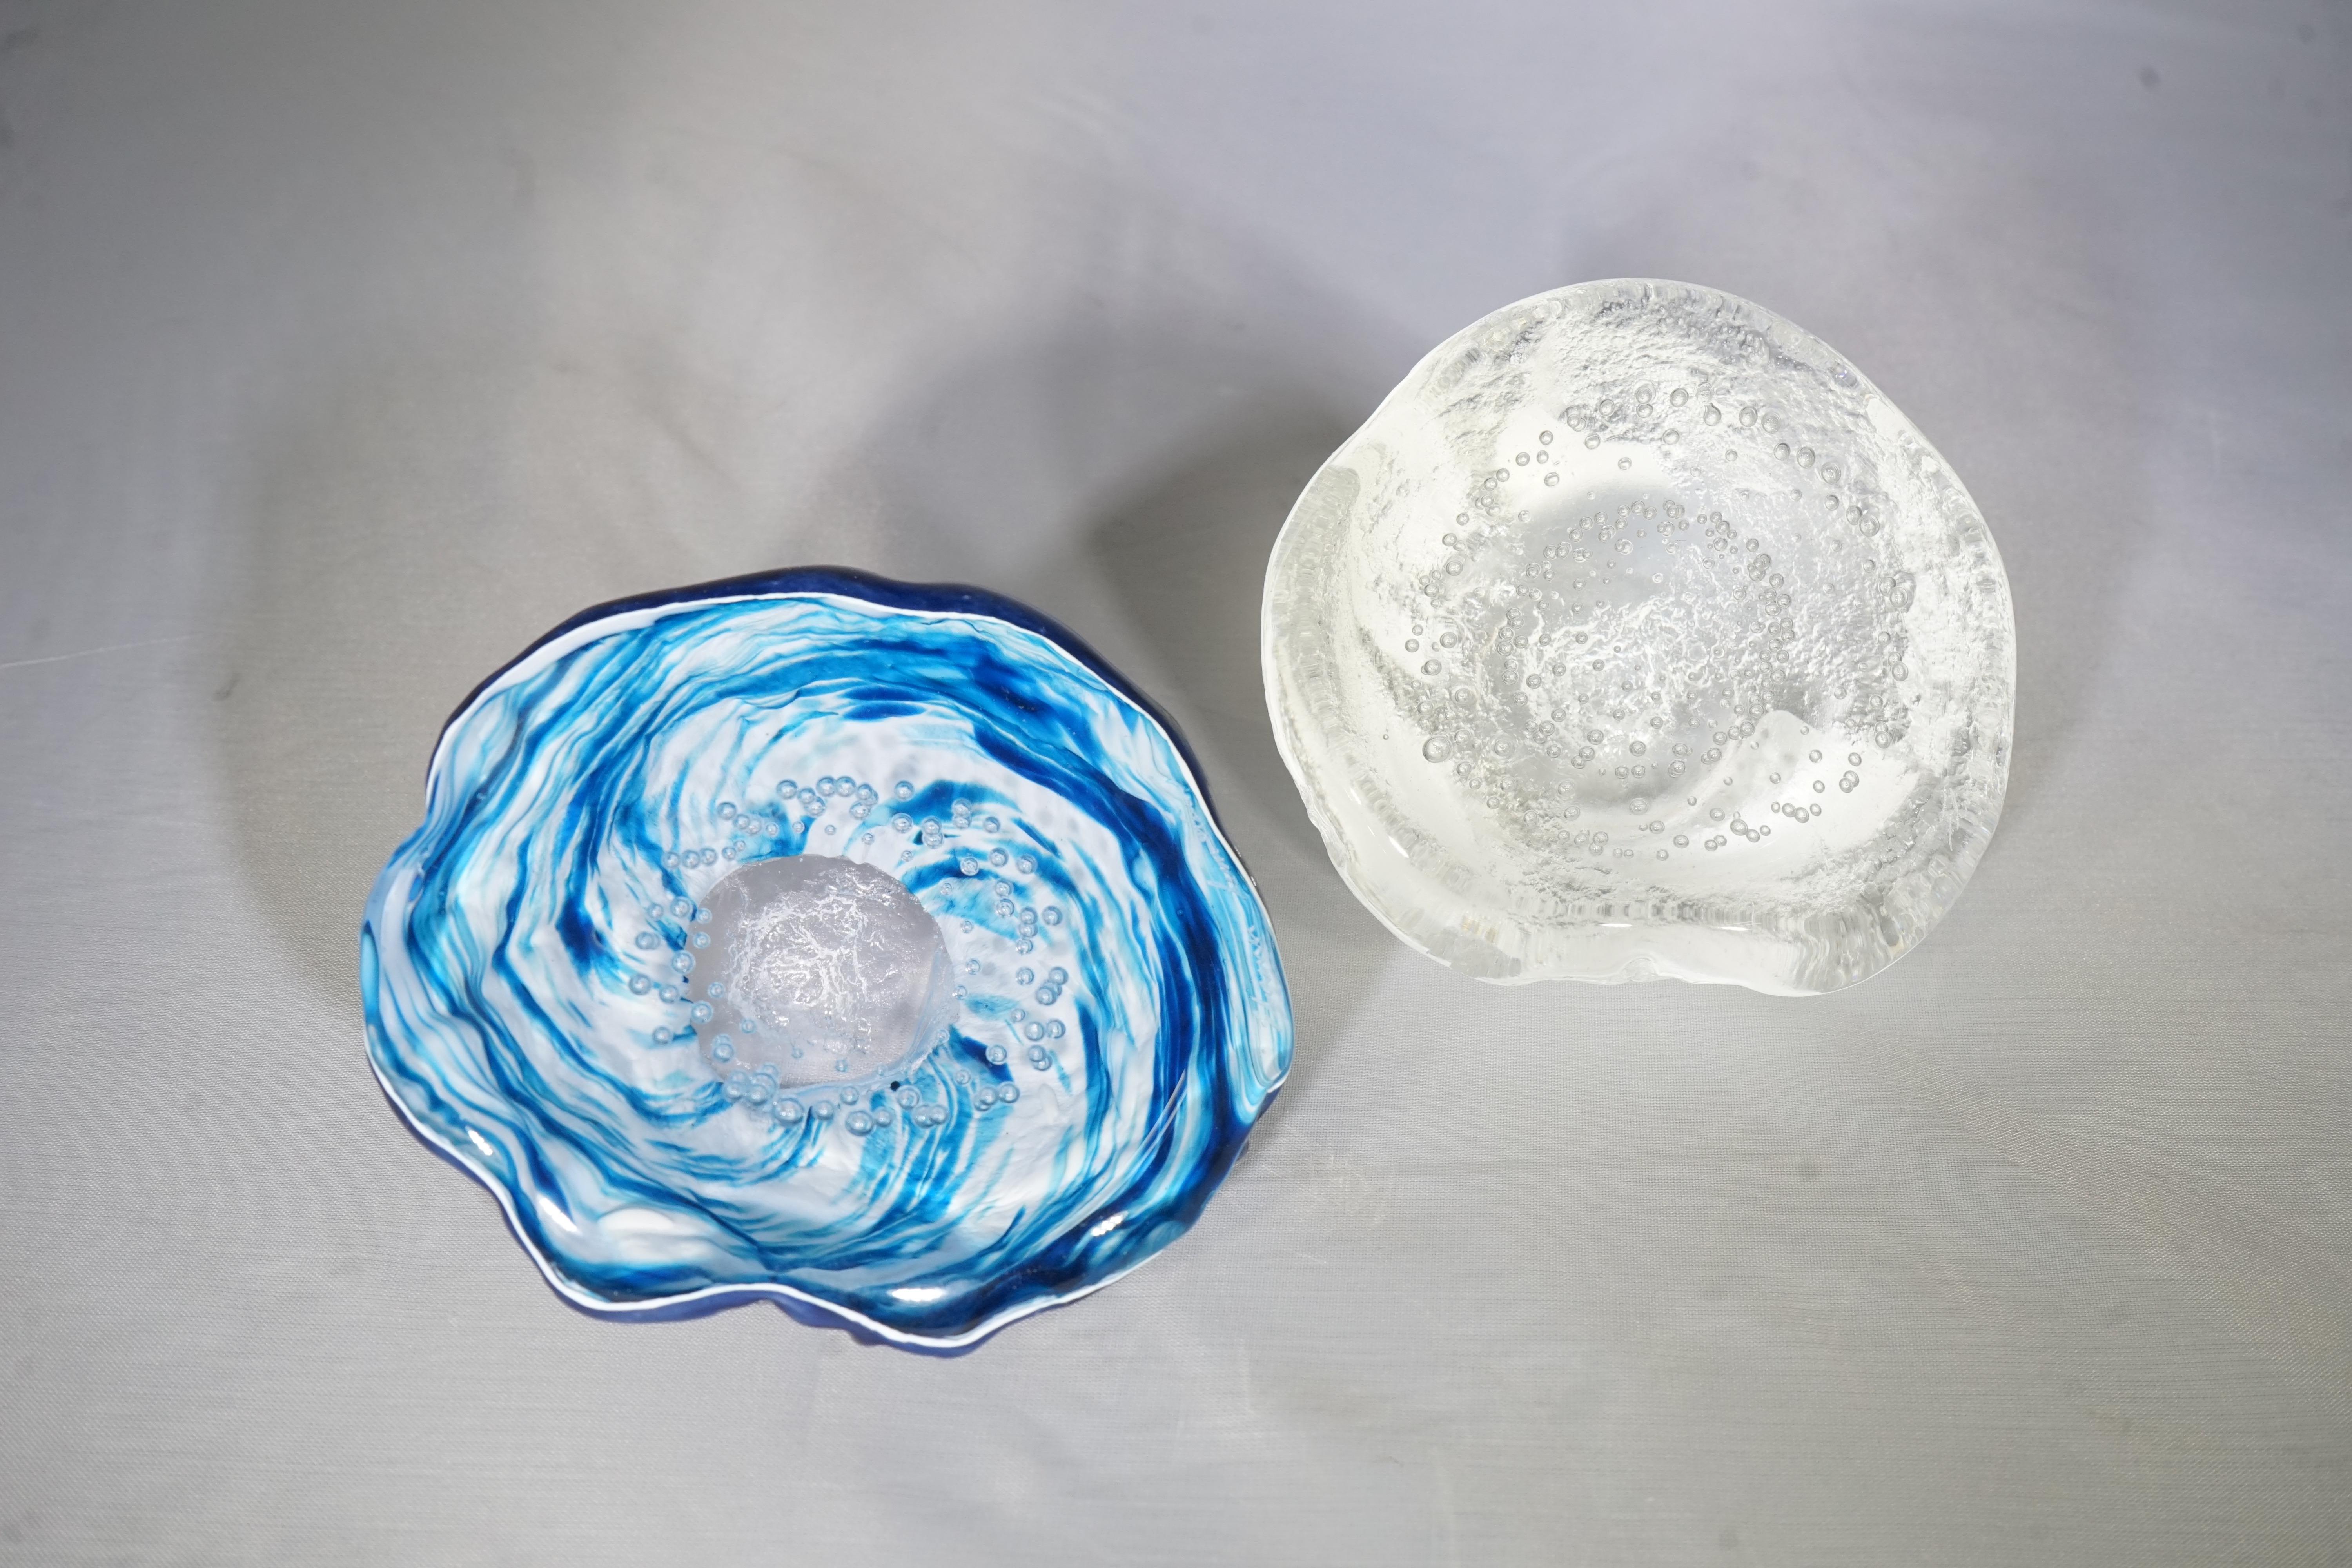 Contemporary French blown glass objet sculpture by Atelier Florence Lemoine. Each piece is unique.